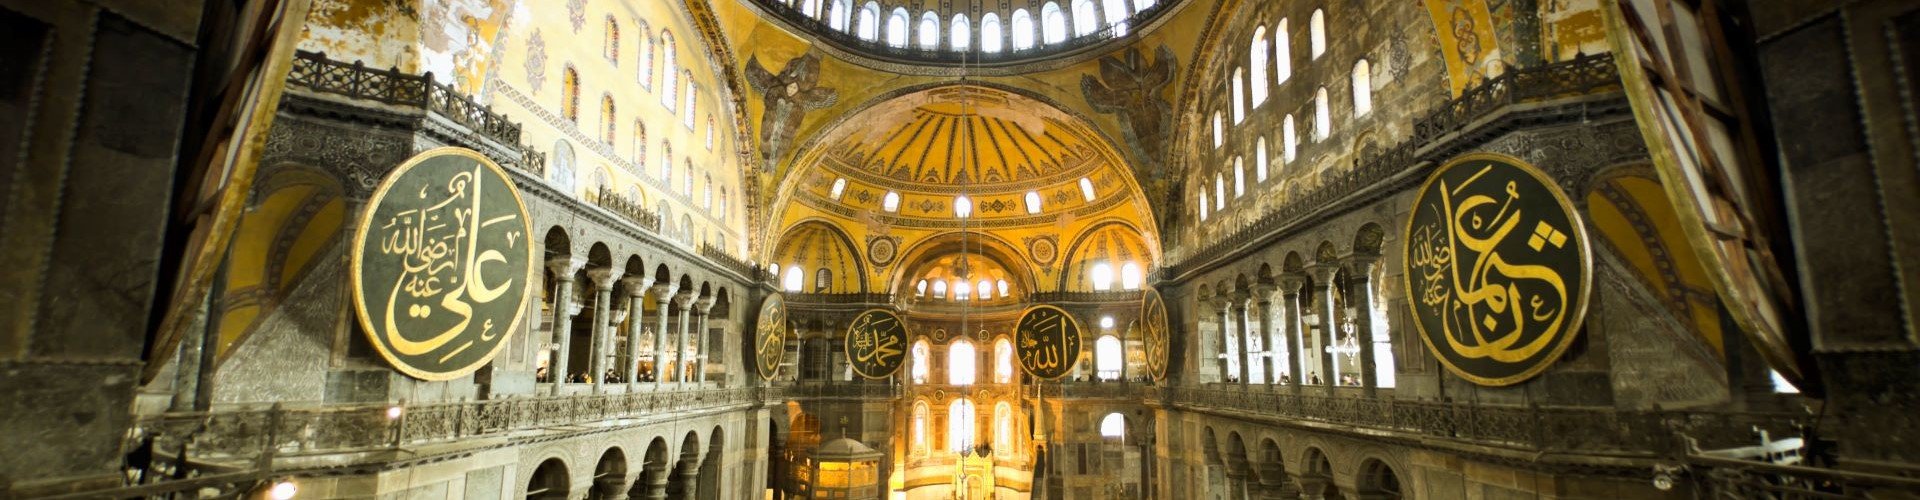 Ausflugsziel Hagia Sophia